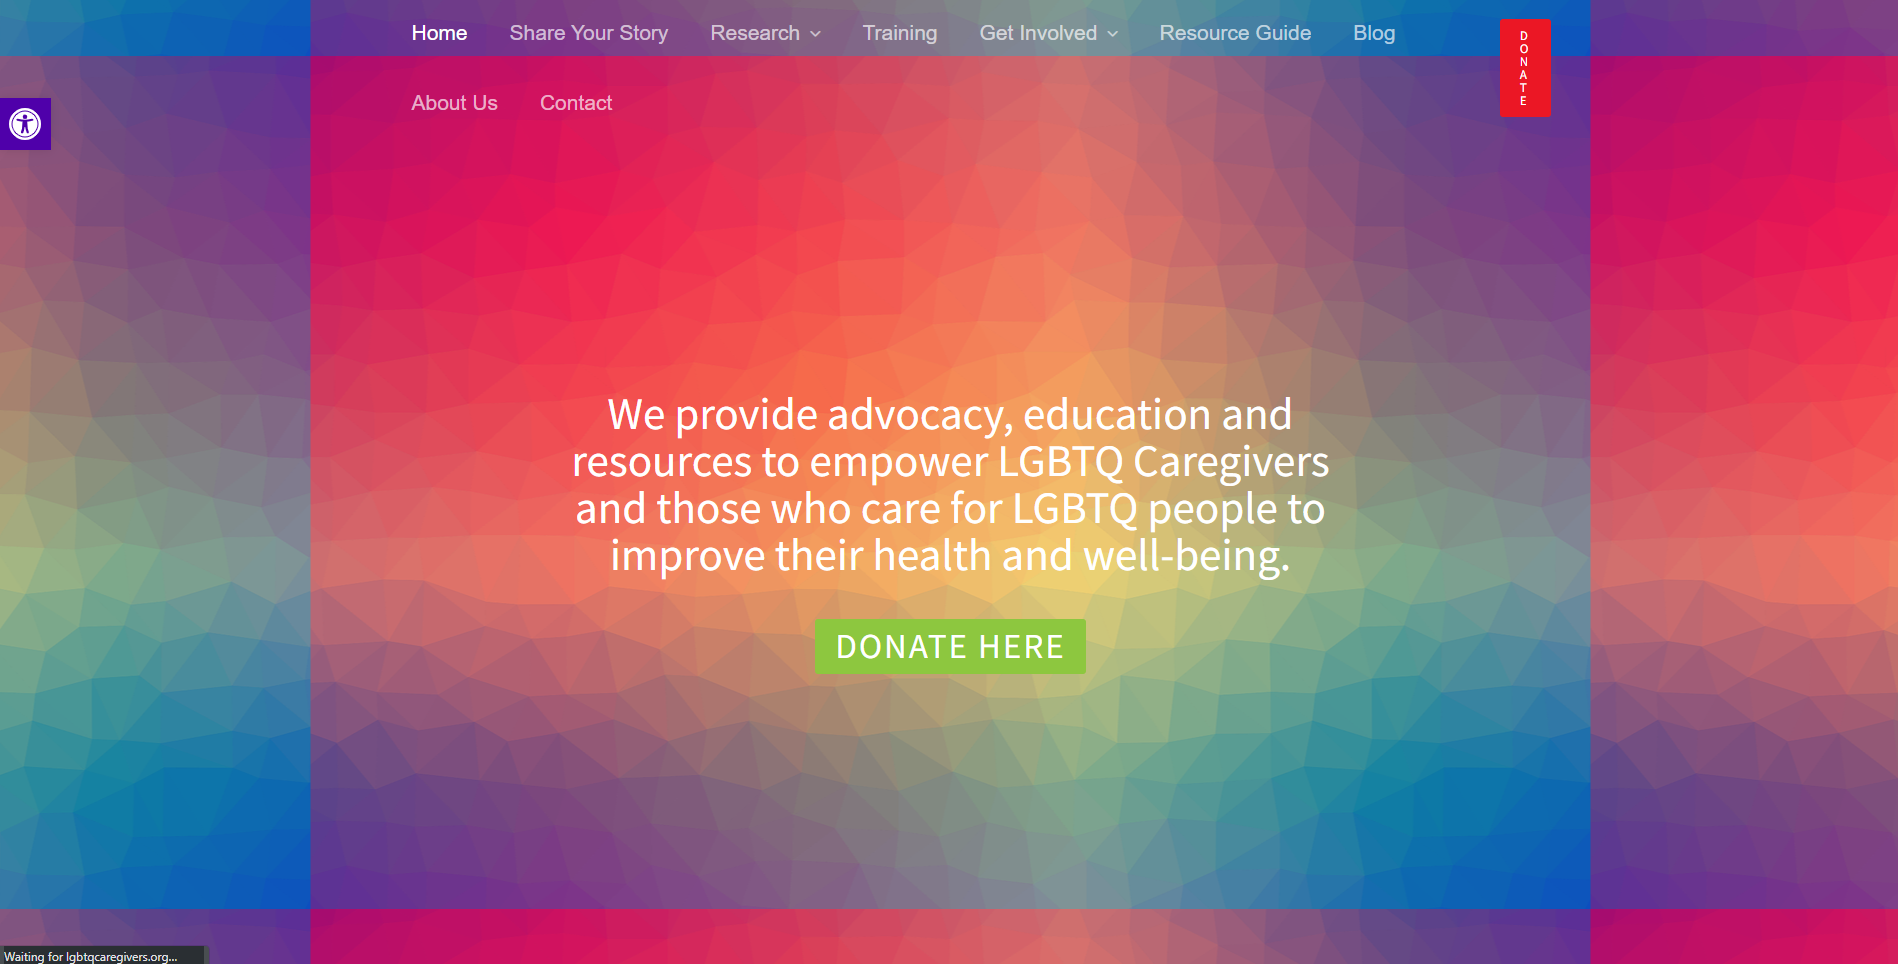 LGTBQ Caregiver Center